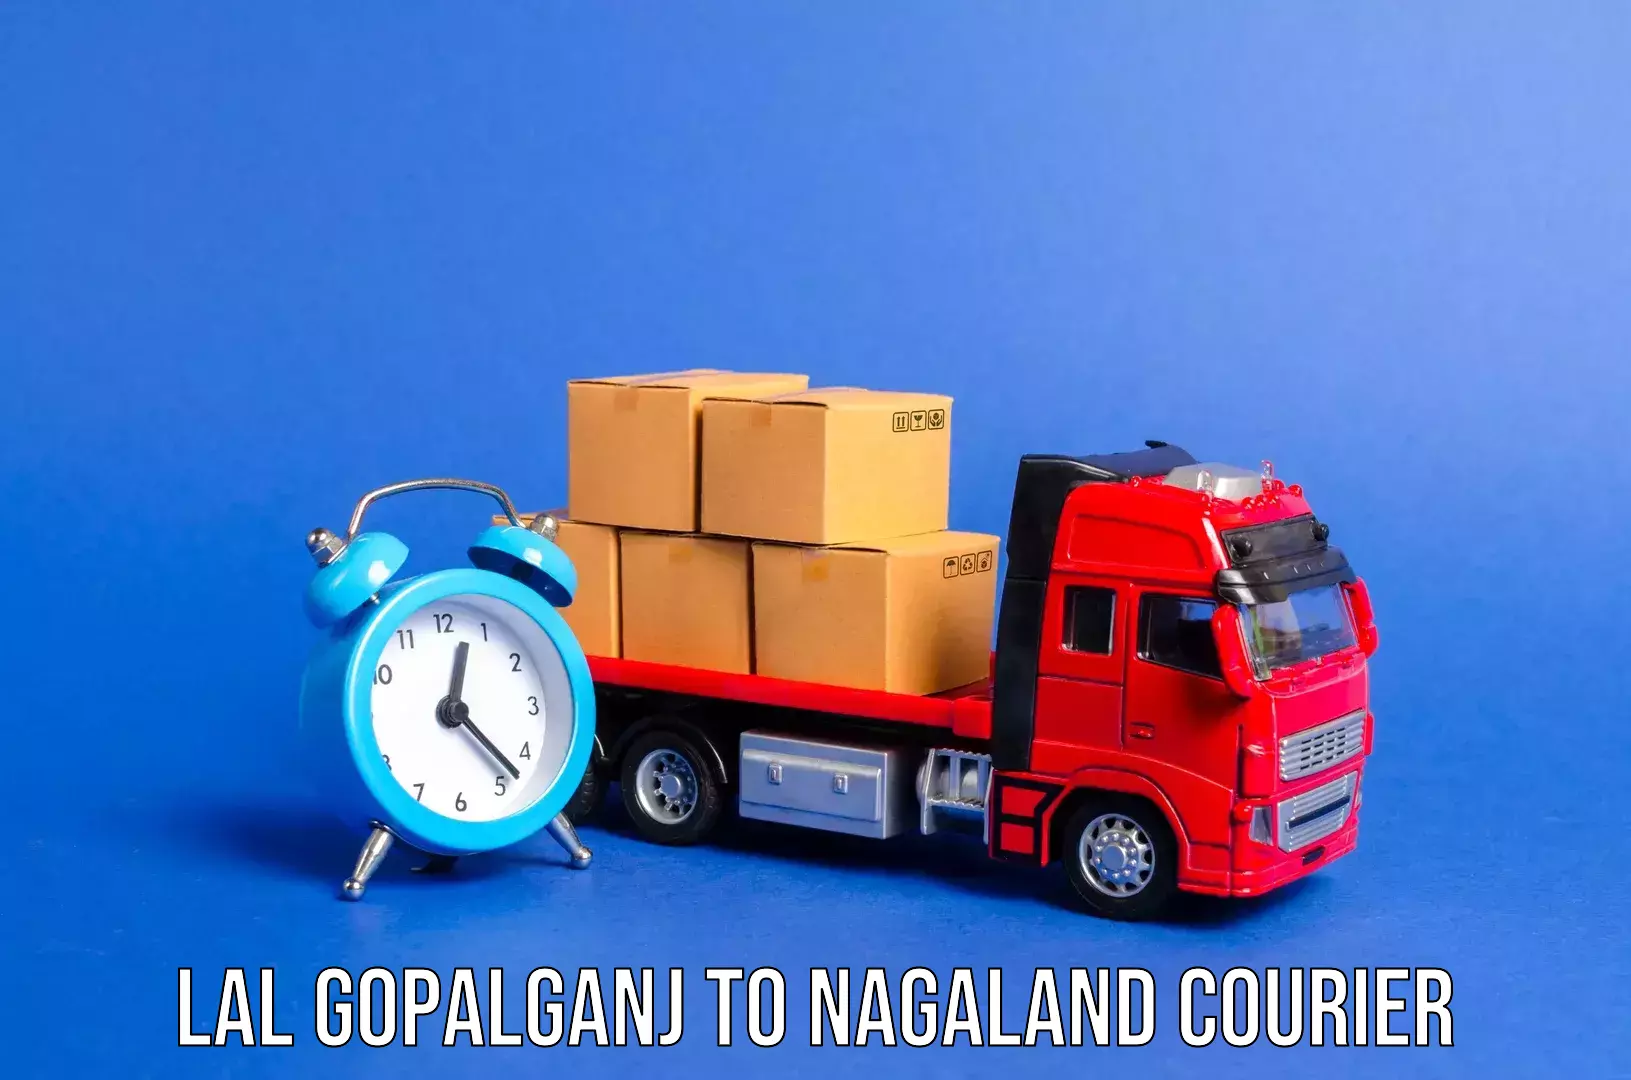 Nationwide luggage courier Lal Gopalganj to Kohima